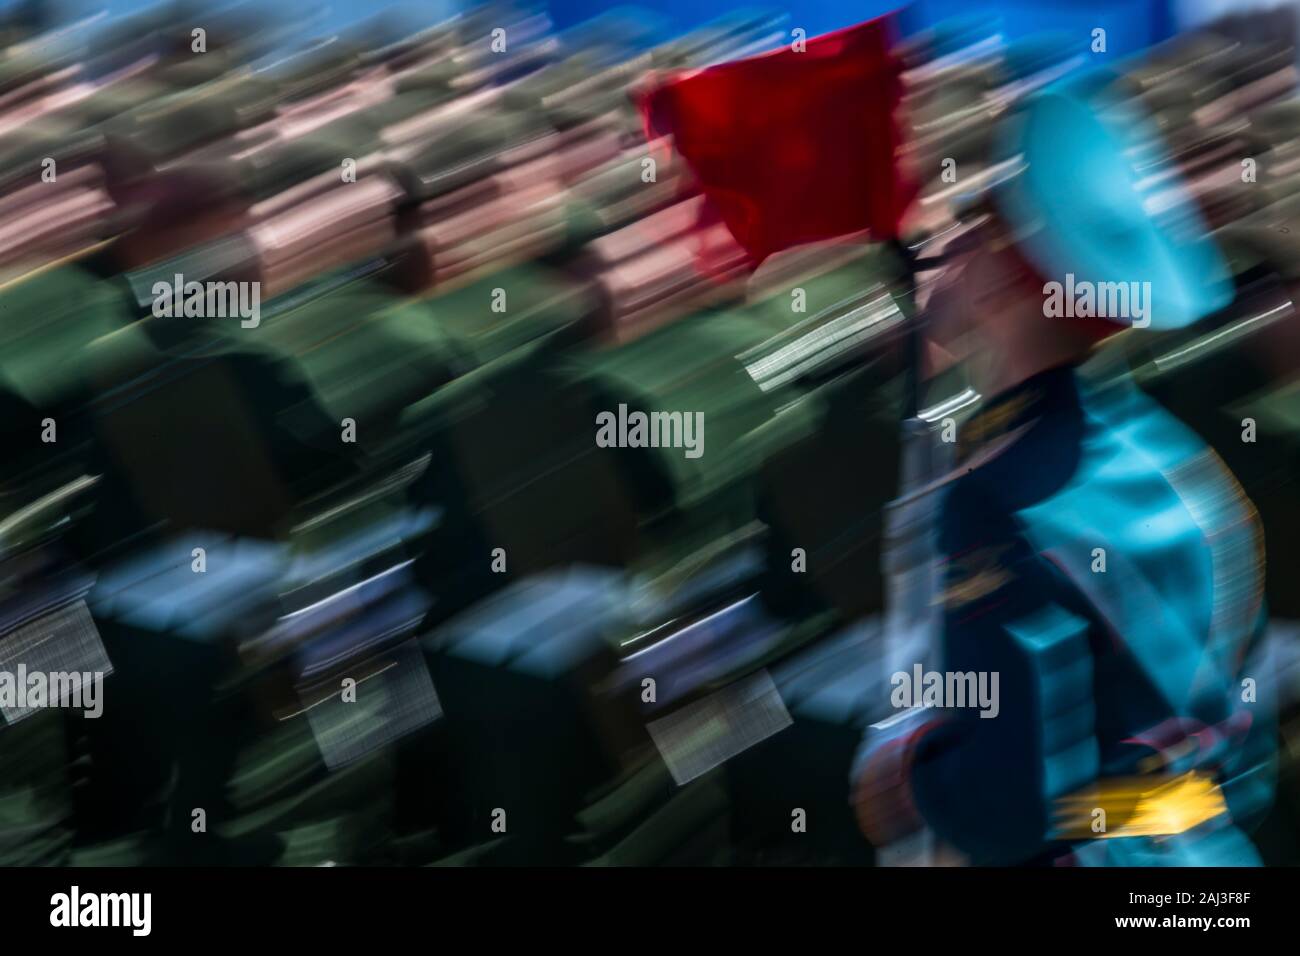 Moskau, Russland. 7. Mai, 2015 russische Soldaten März über dem Roten Platz in Moskau bei einem Sieg Tag Militärparade anlässlich des 70. Jahrestages des Sieges über Nazi-Deutschland im Großen Vaterländischen Krieg von 1941-1945 Stockfoto